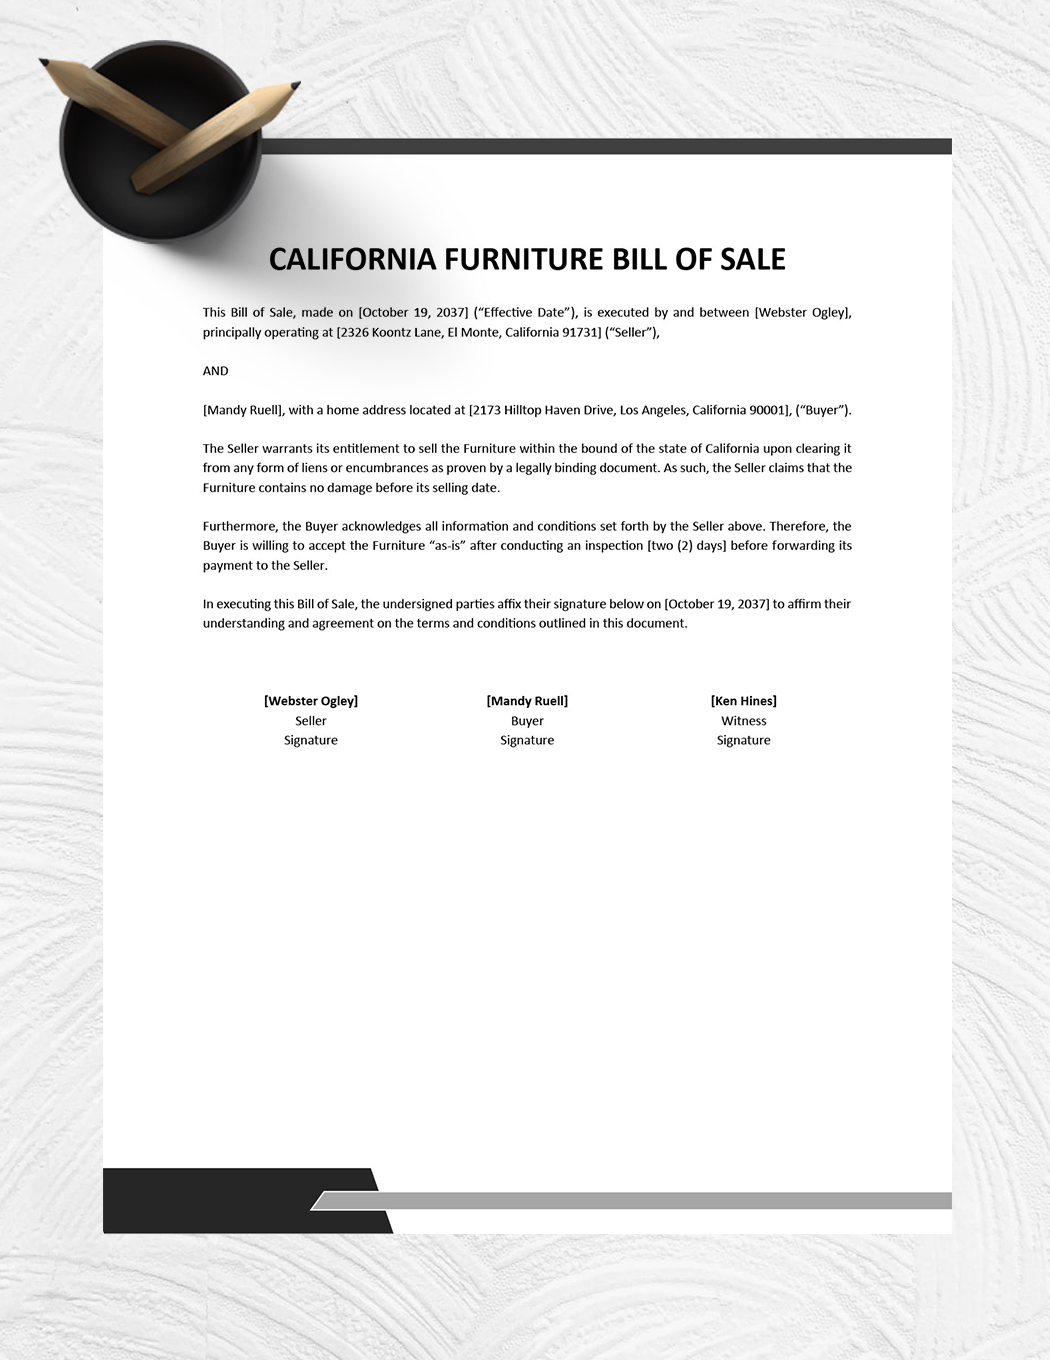 California Furniture Bill of Sale Template